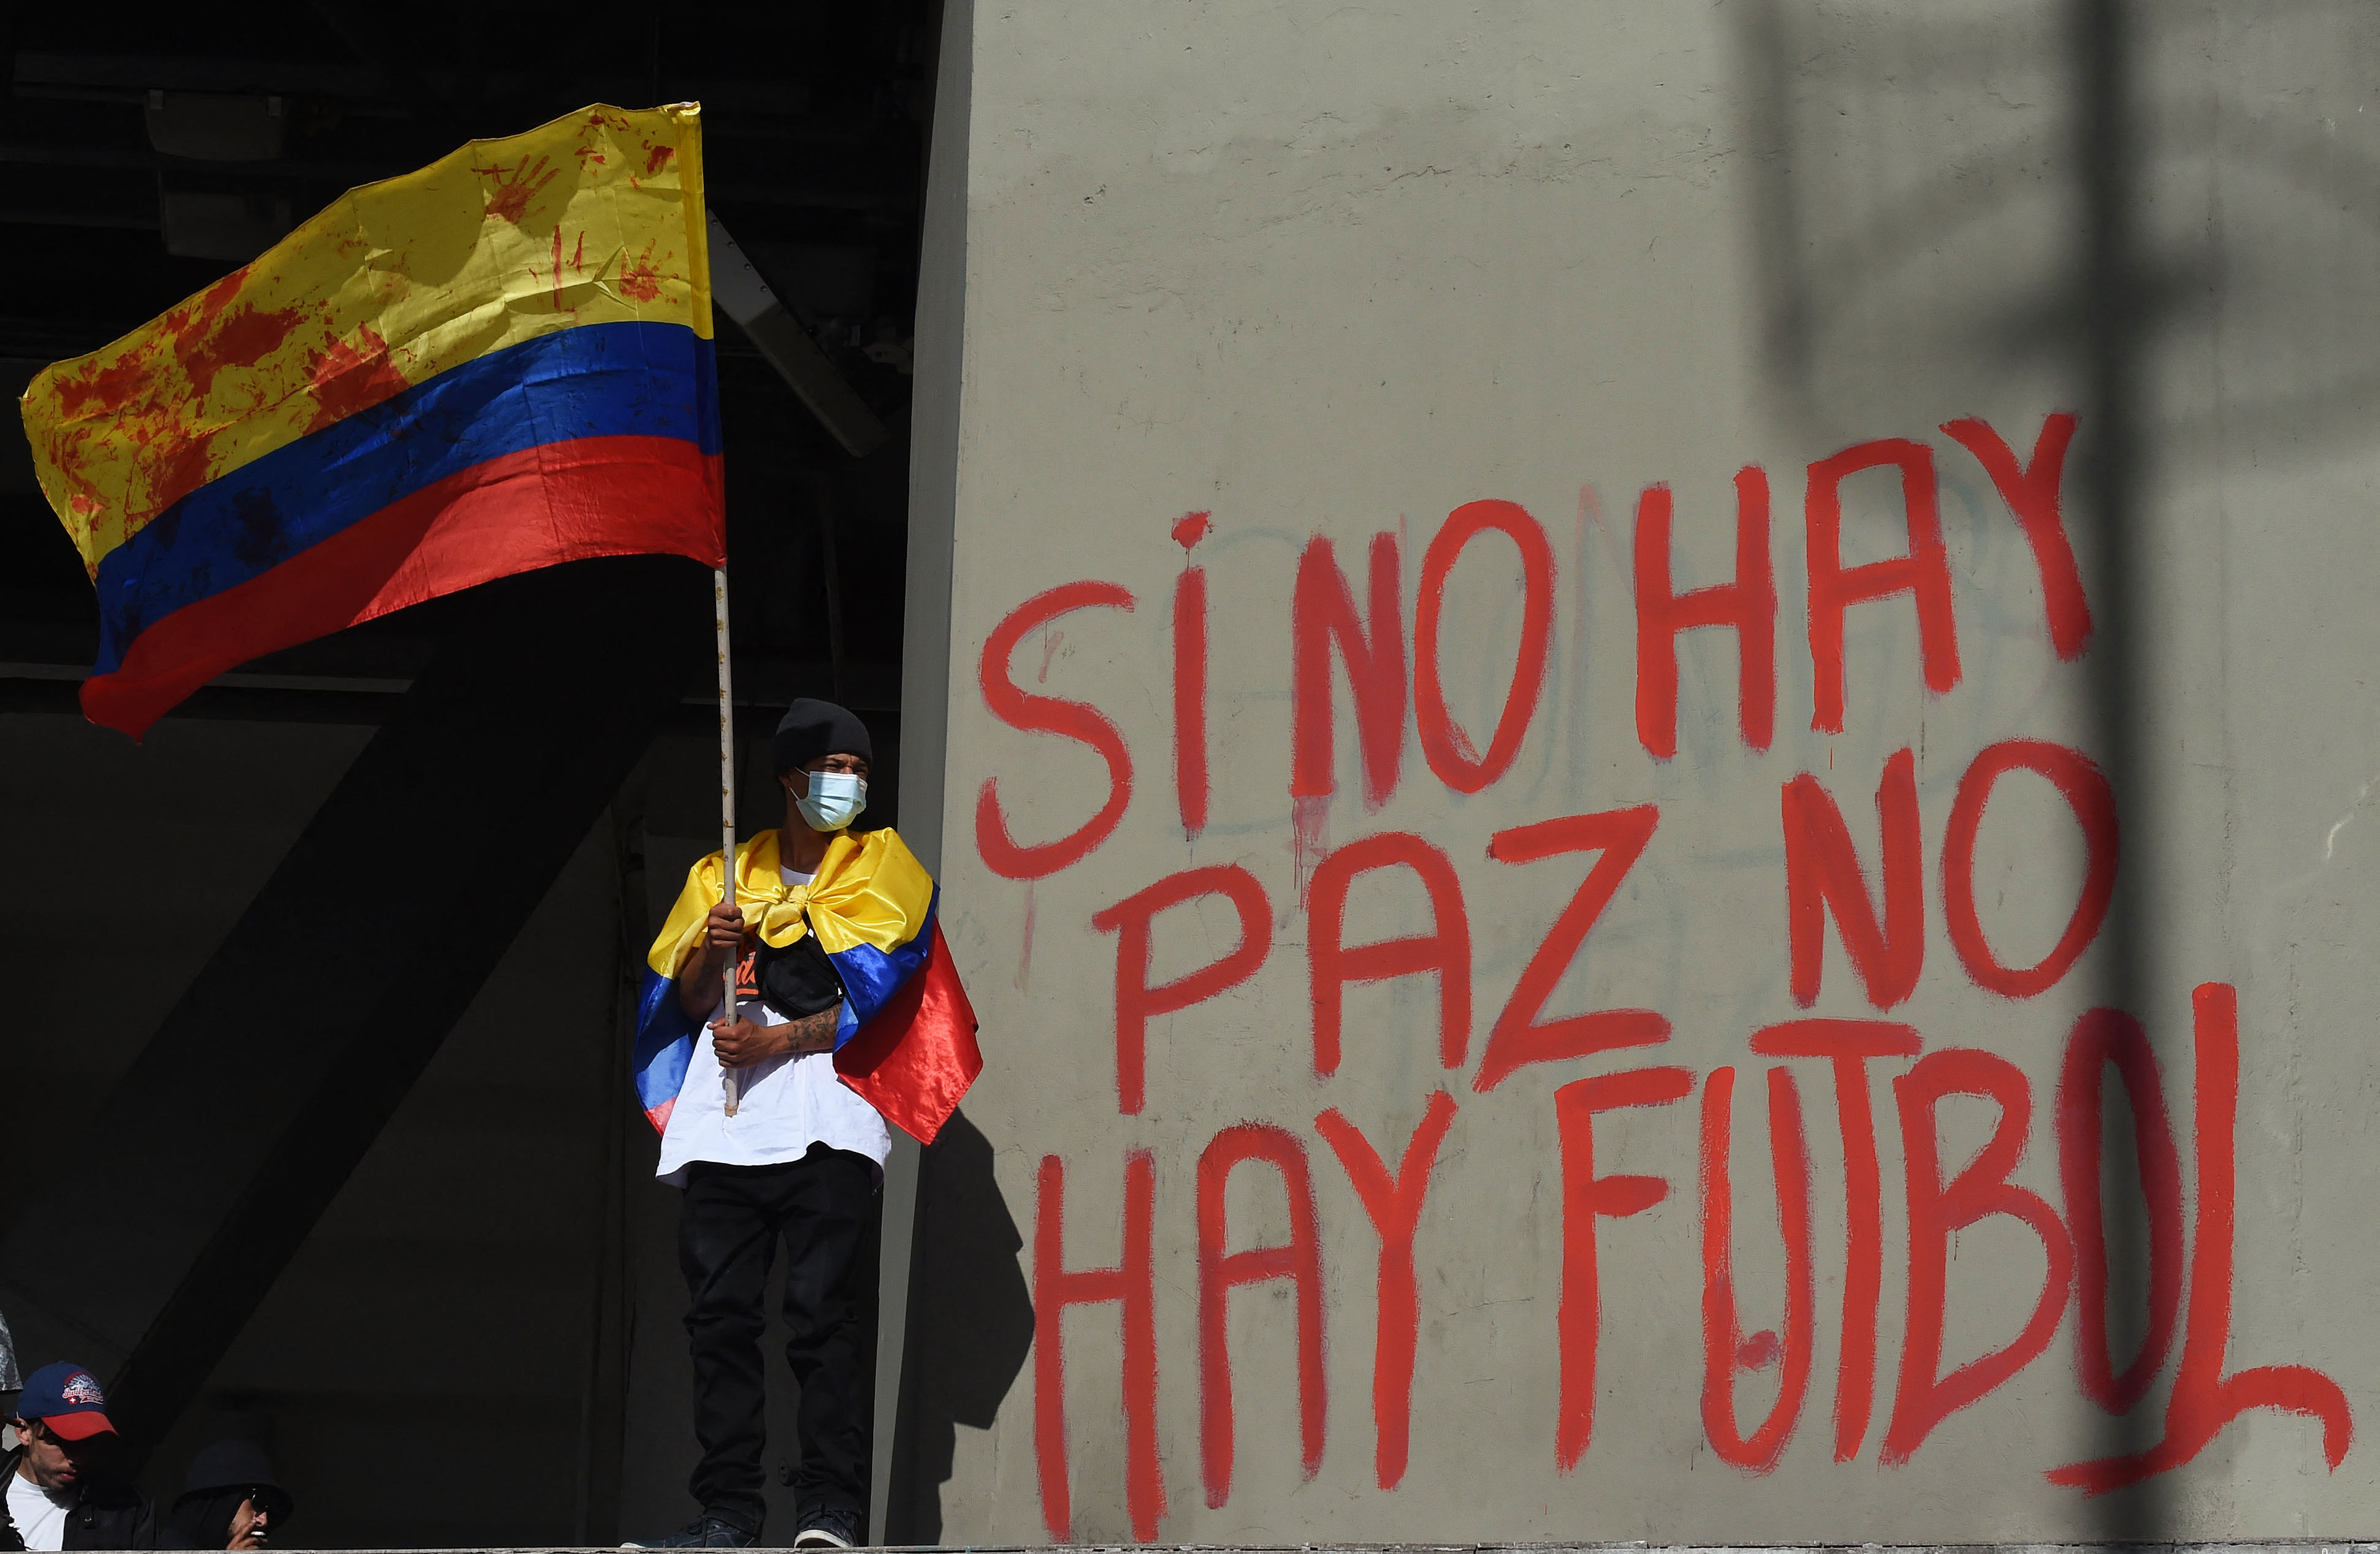 Un manifestante sostiene una bandera nacional colombiana junto a un graffiti en una pared del estadio El Campín que dice 'No hay paz, no hay fútbol' durante una protesta contra Colombia como sede del torneo de fútbol Copa América frente al estadio El Campín en Bogotá, el 19 de mayo de 2021 mientras el país enfrenta su peor crisis política y civil en la historia reciente.